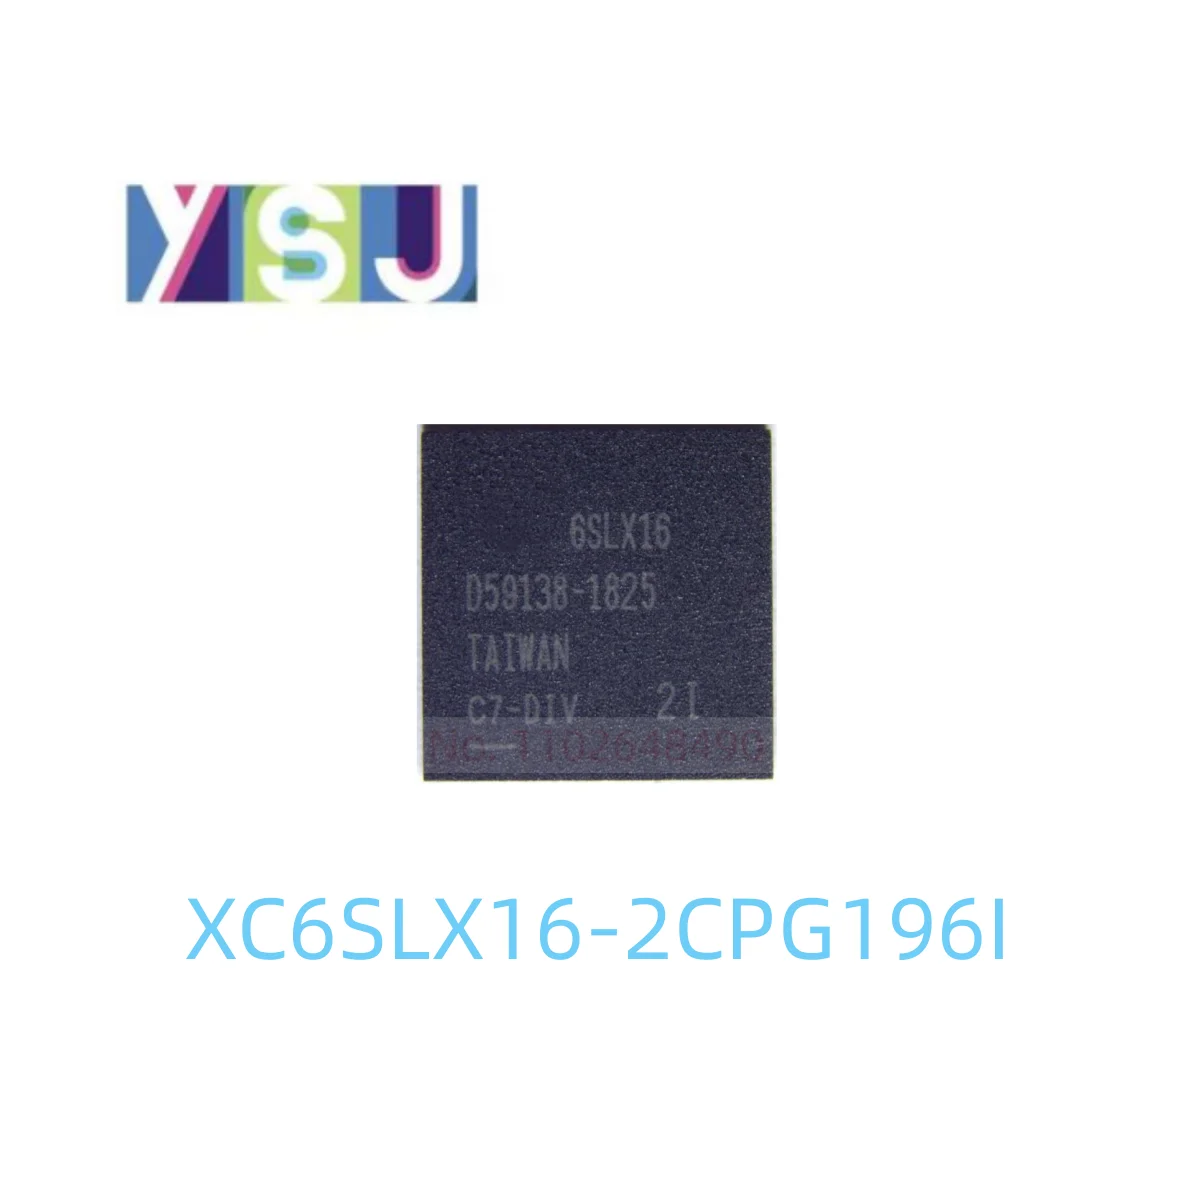 XC6SLX16-2CPG196I IC CPLD FPGA Оригинальная Программируемая В полевых условиях Матрица вентилей